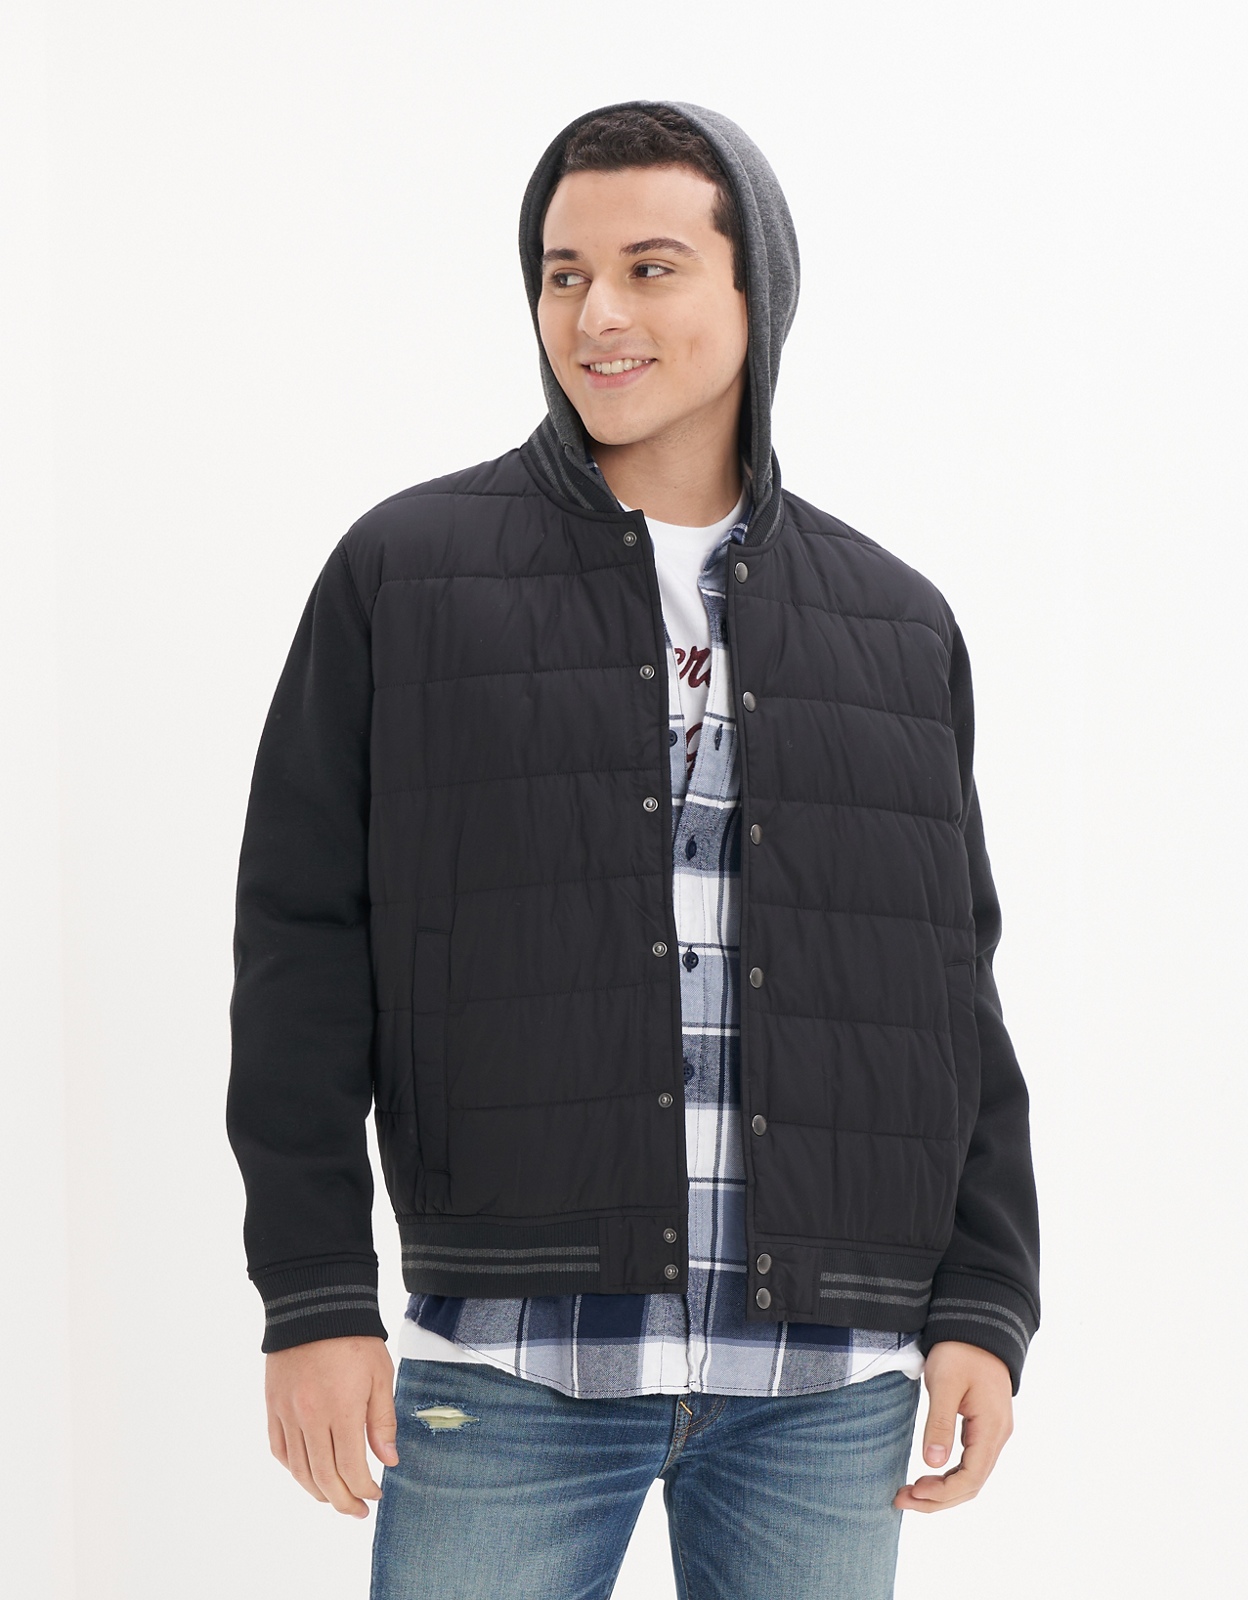 Buy Jacket online | American Outfitters UAE